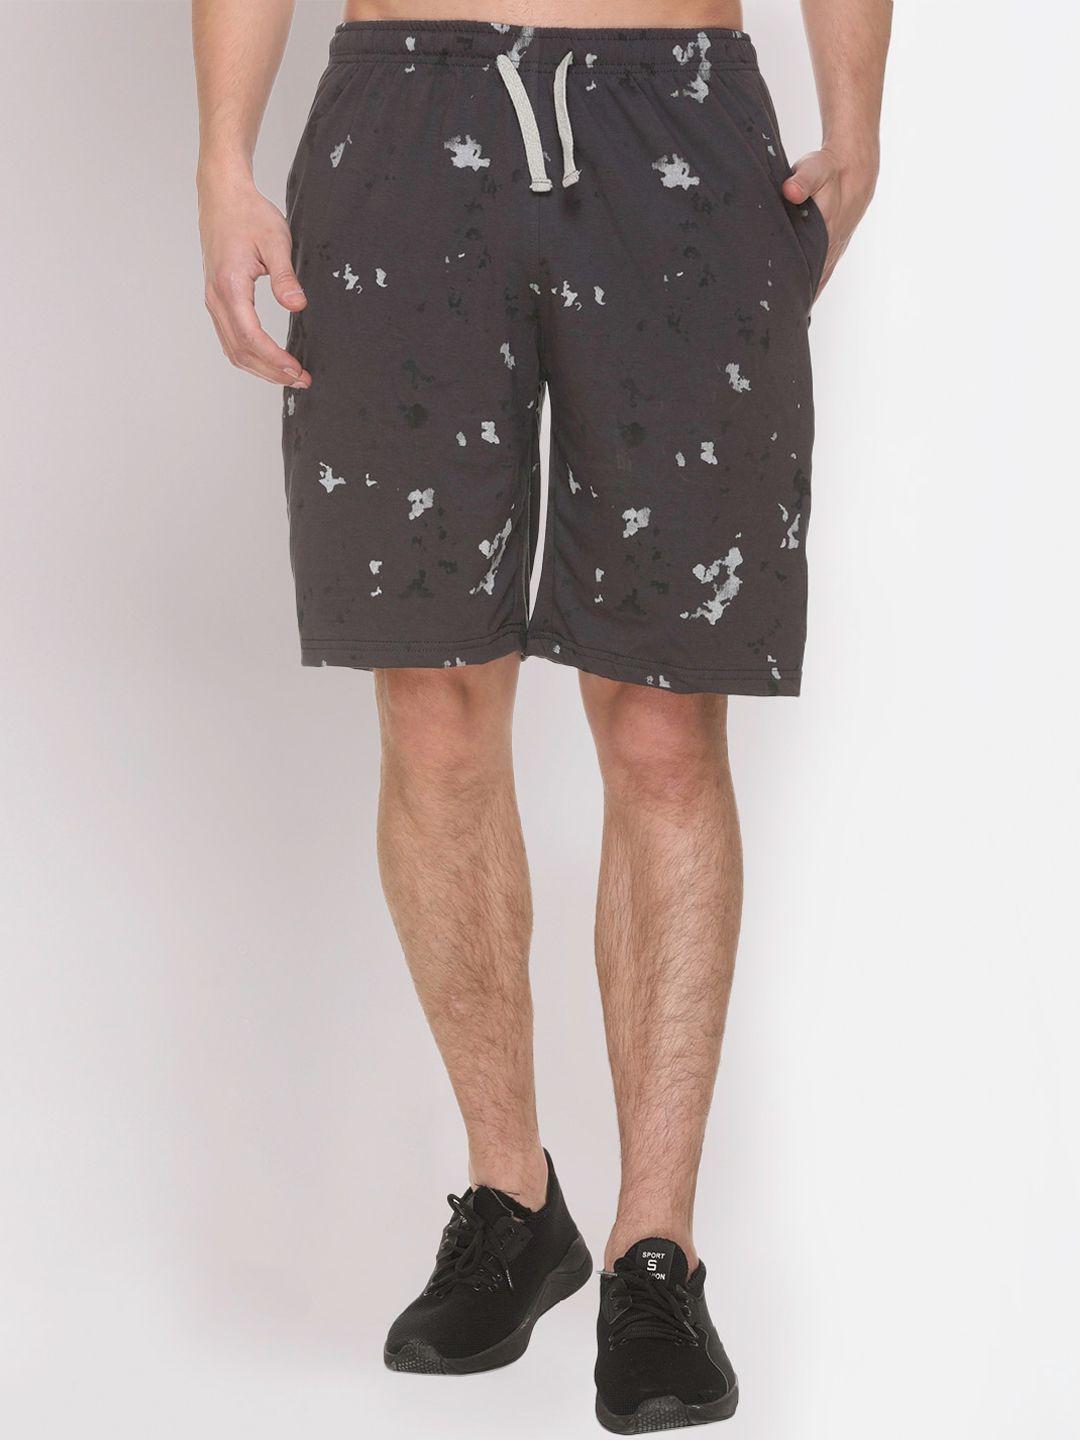 obaan men grey printed cotton sports shorts